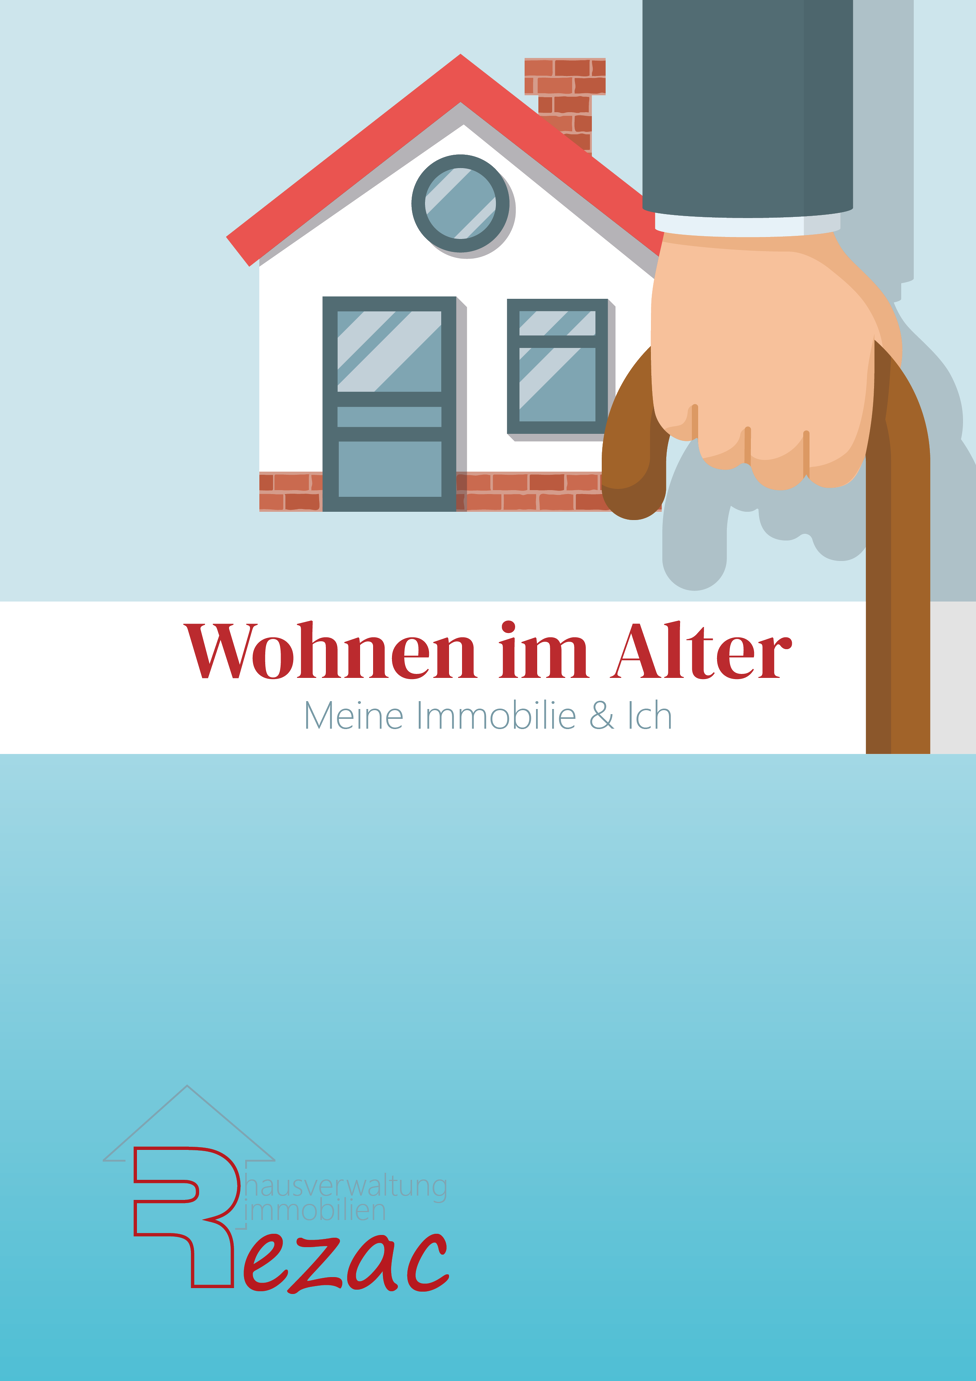 Coverbild des E-Books 'Wohnen im Alter - Meine Immobilie & Ich' von Rezac